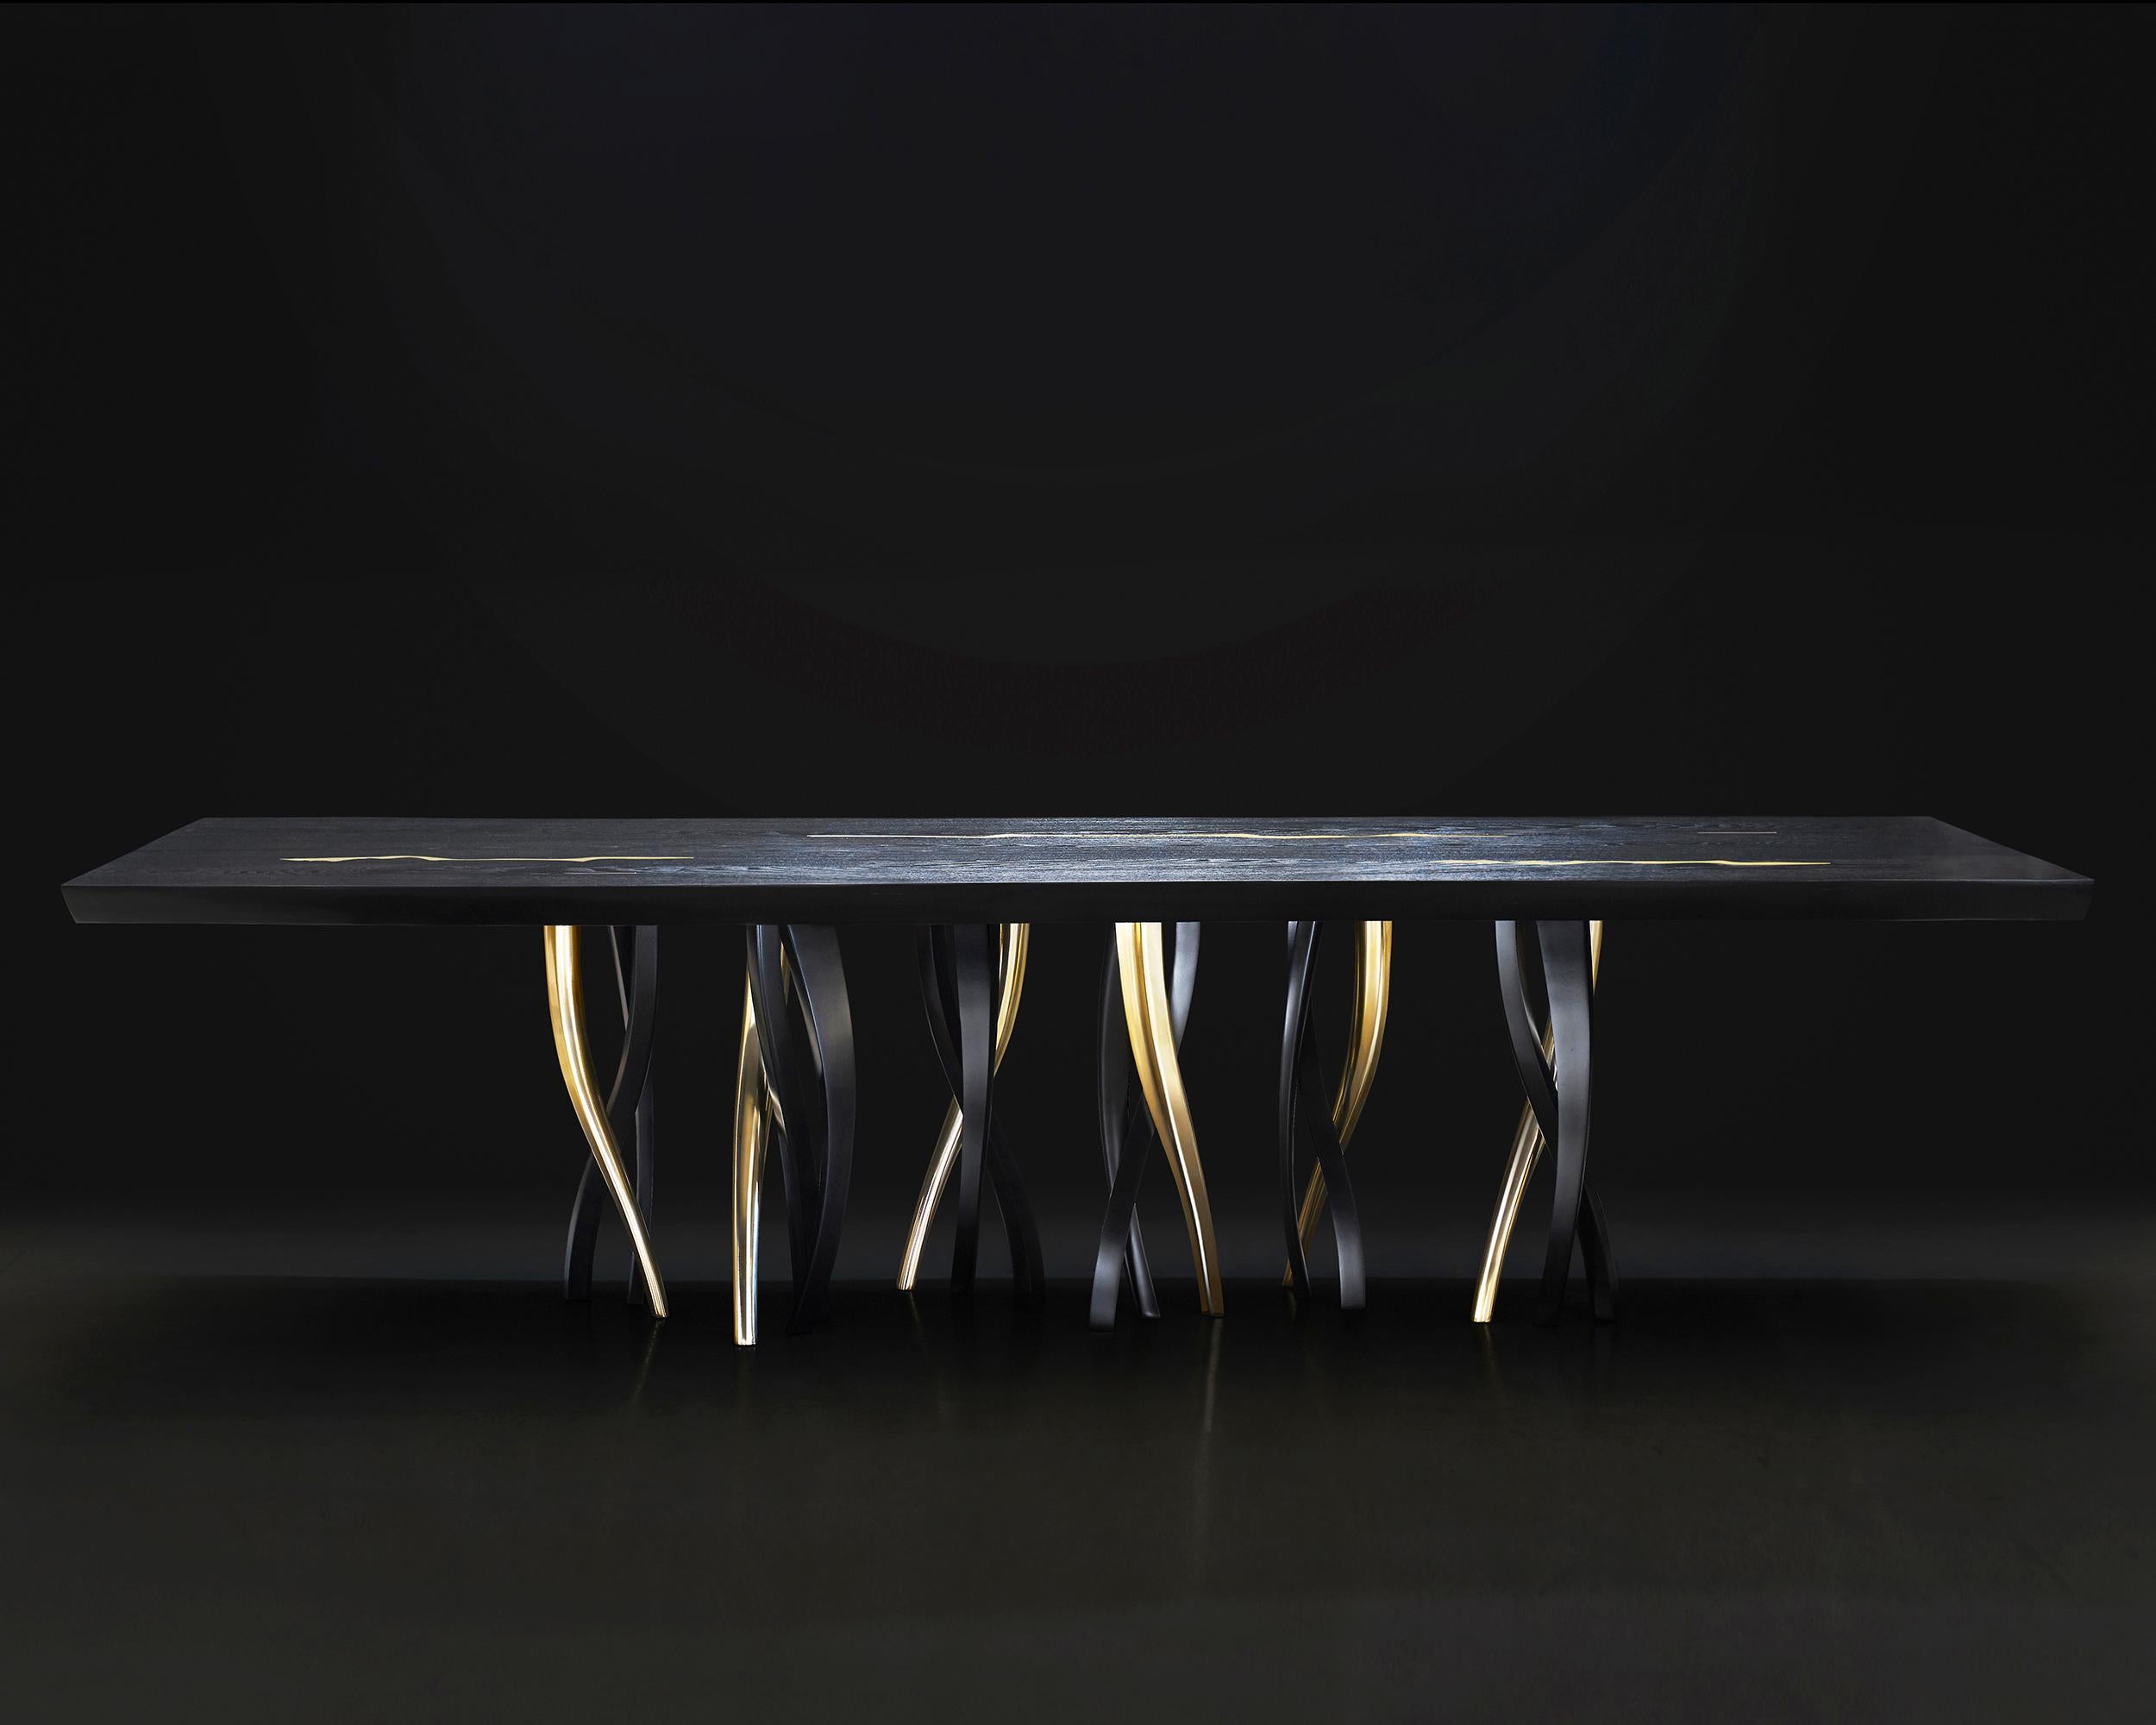 Ein funkelnder Wald von Beinen trägt einen majestätischen Holzblock mit starken, lebendigen Konturen. Il Pezzo 8 Black Table zeigt sich mit seinen schwarzen und goldenen Farben als eklektisches, elegantes Spiel, in dem man sich verlieren kann. Er